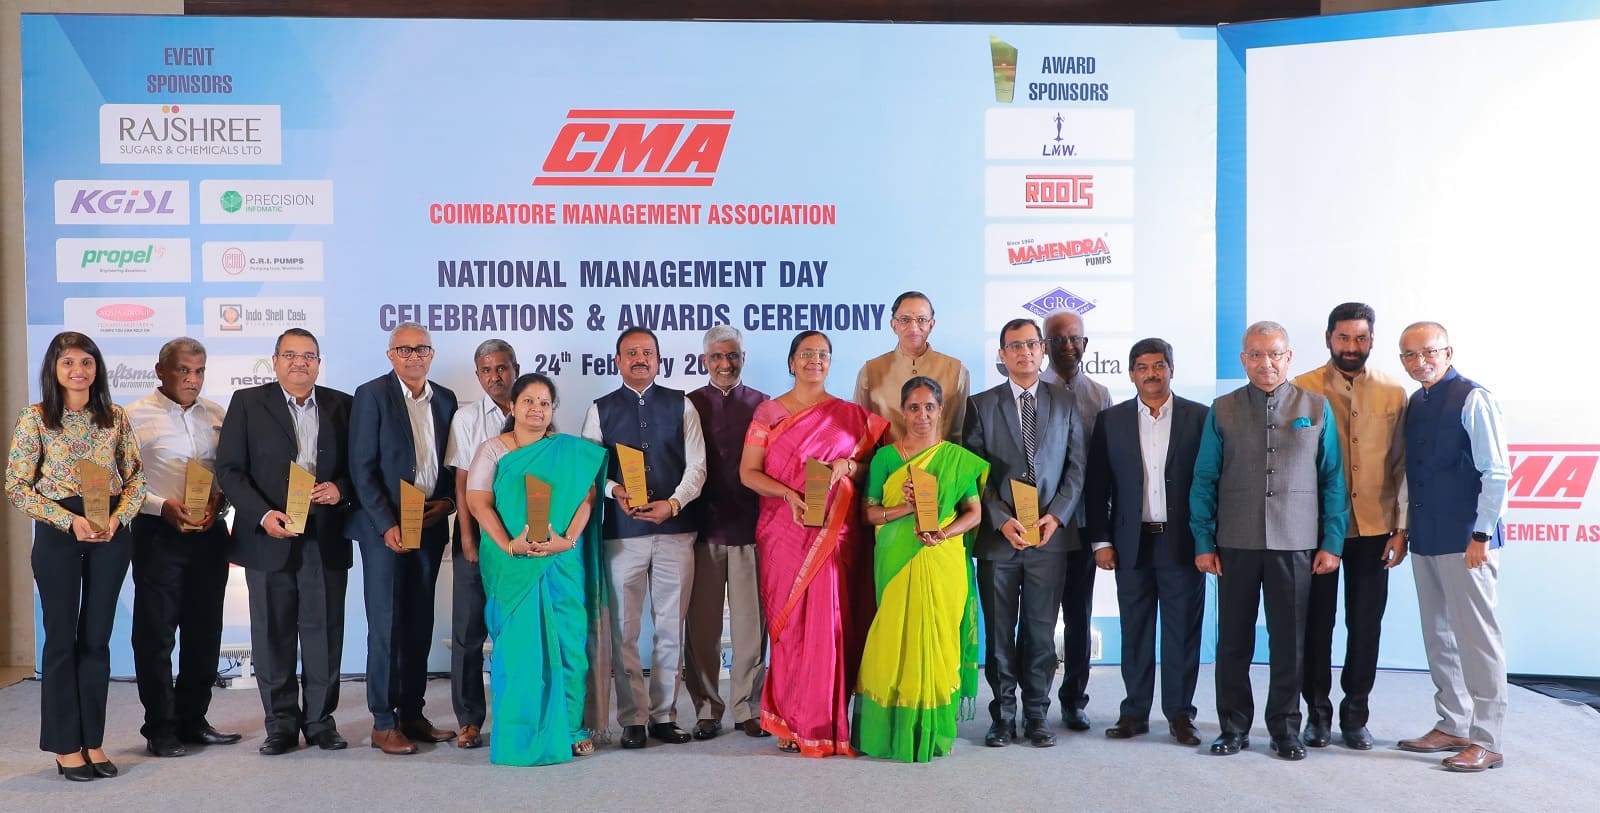 Coimbatore Management Association